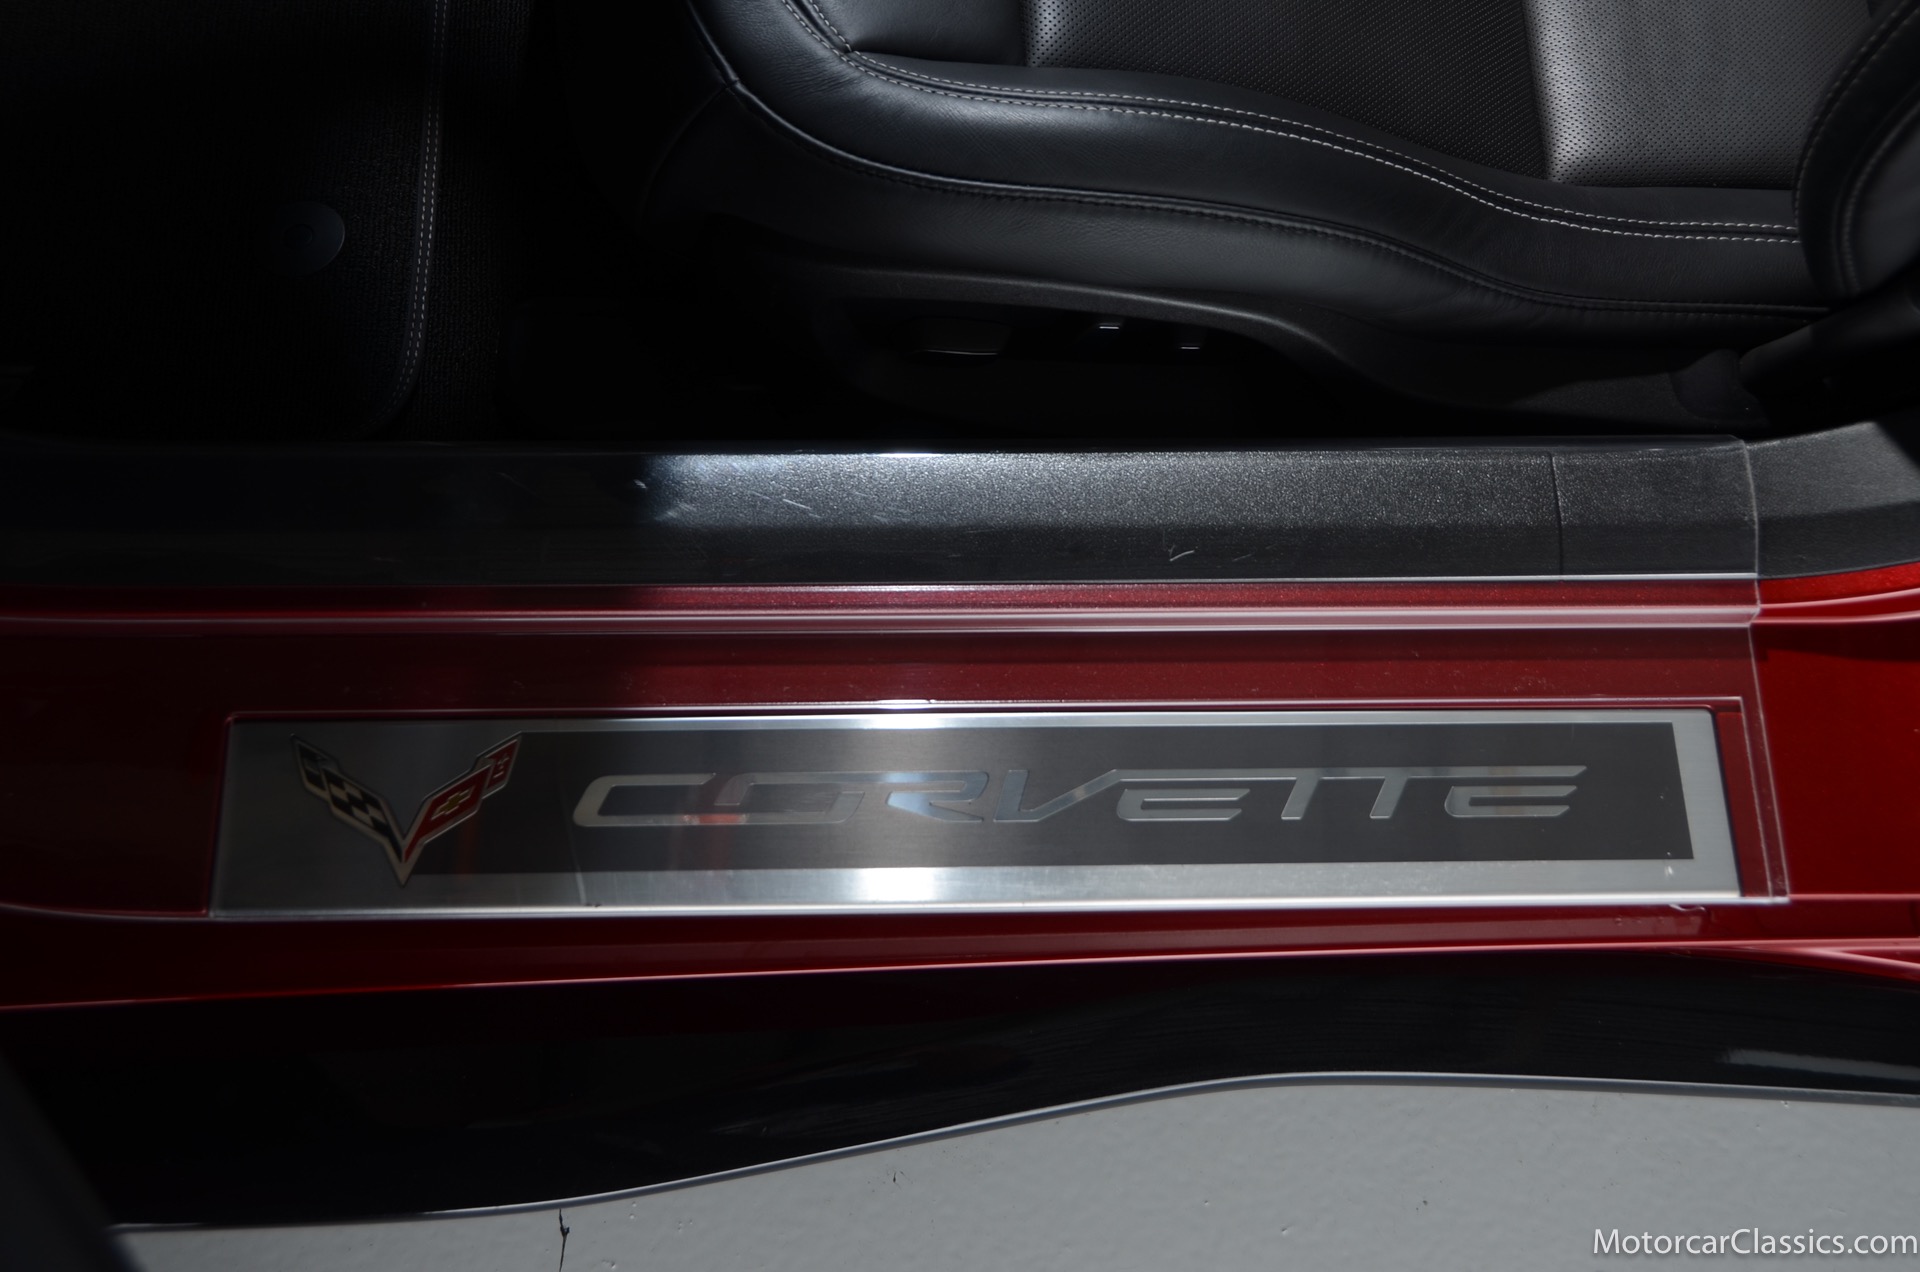 2015 Chevrolet Corvette Z06